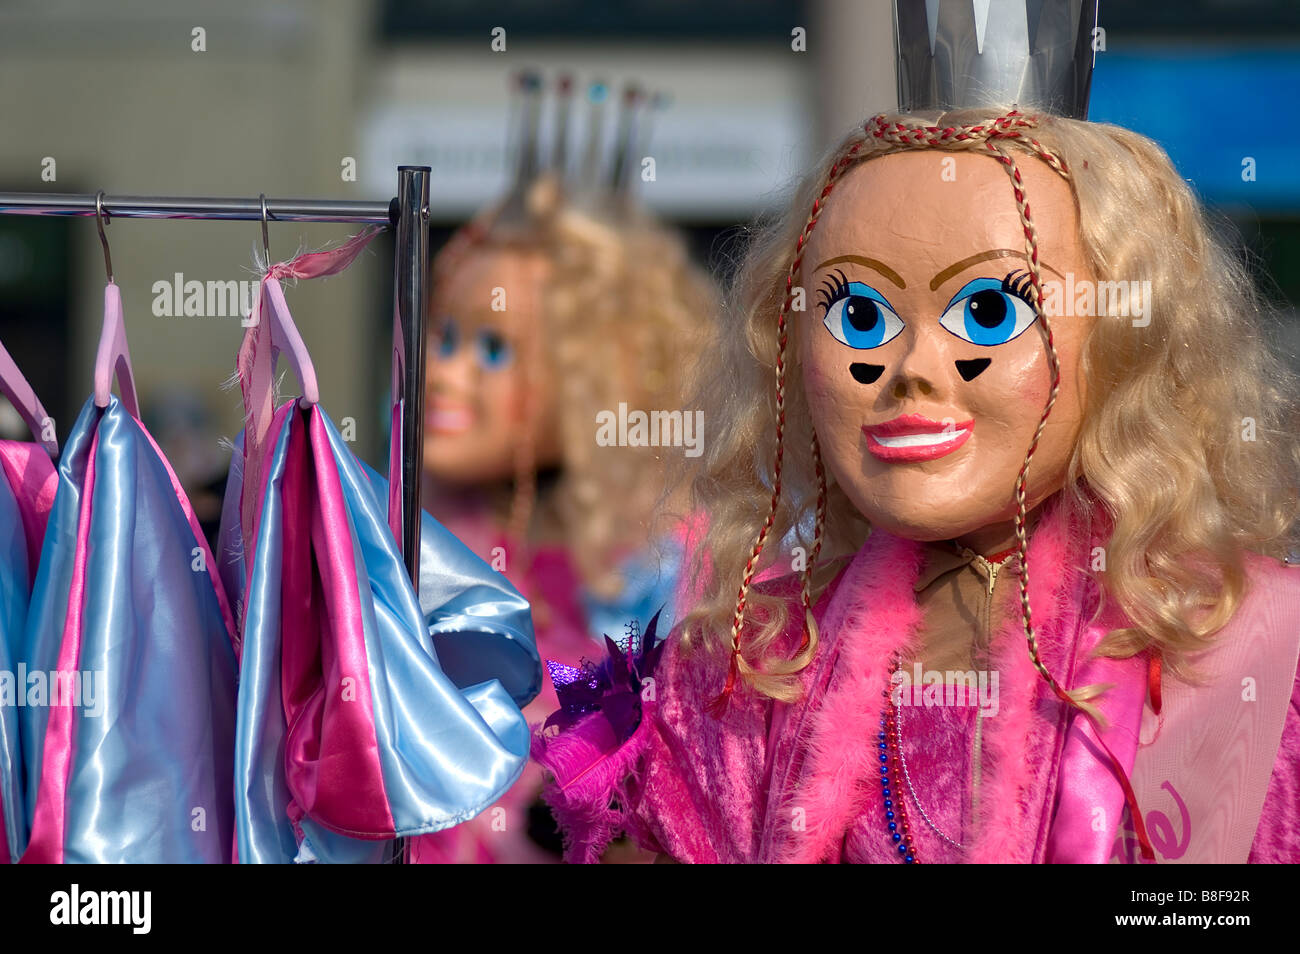 Bild von einem lustigen Barbie Karnevalskostüm während der Fasnacht in Luzern Schweiz Stockfoto